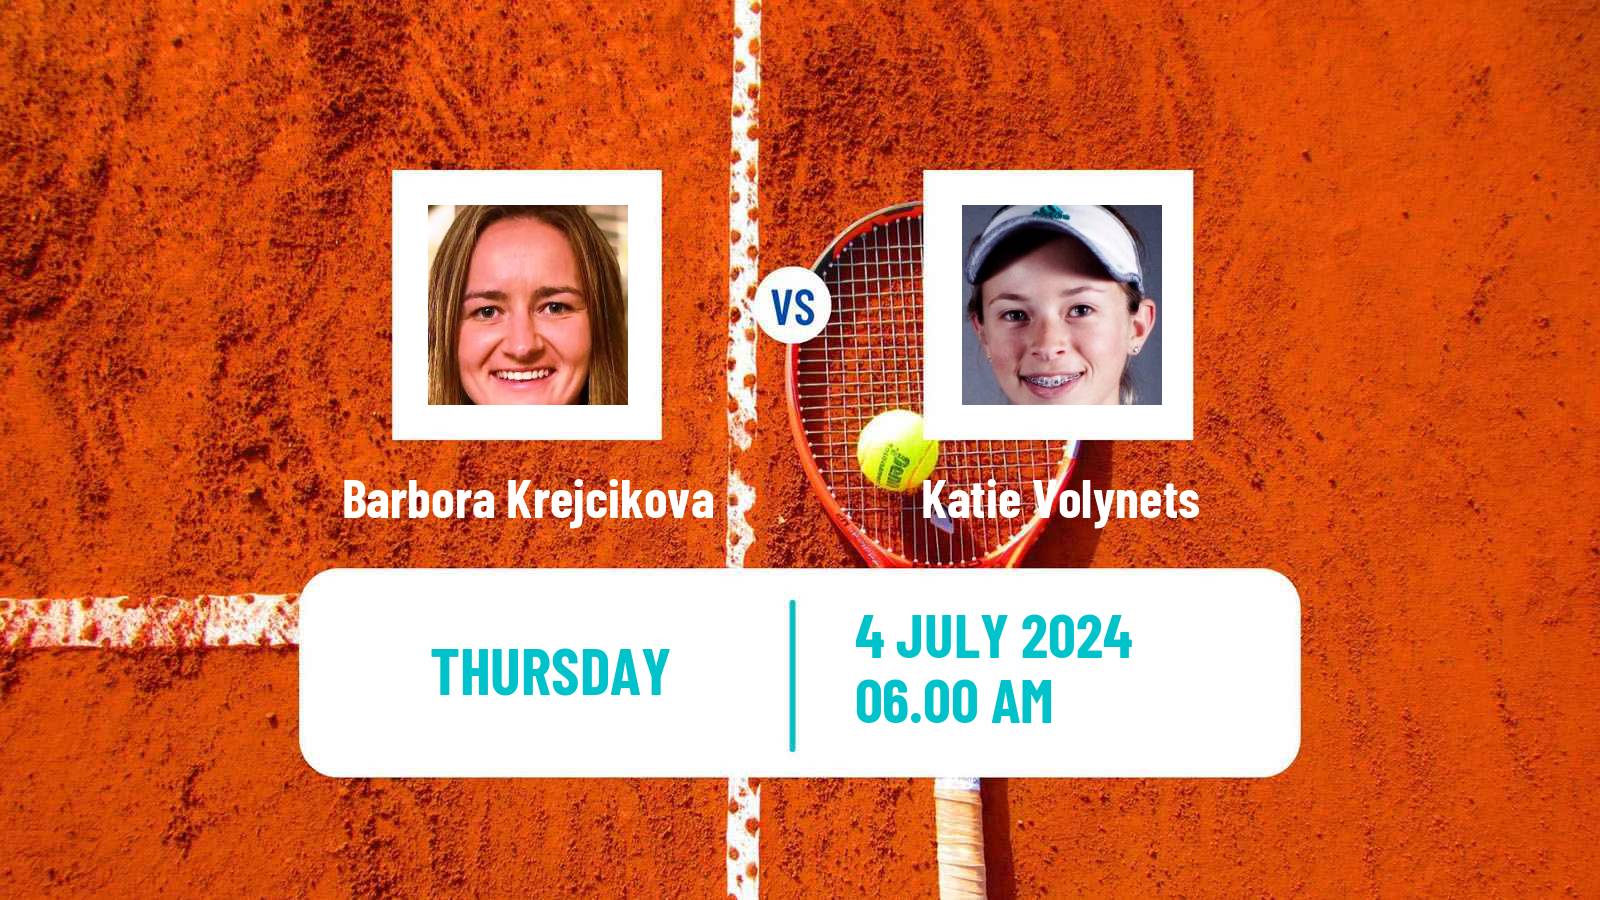 Tennis WTA Wimbledon Barbora Krejcikova - Katie Volynets